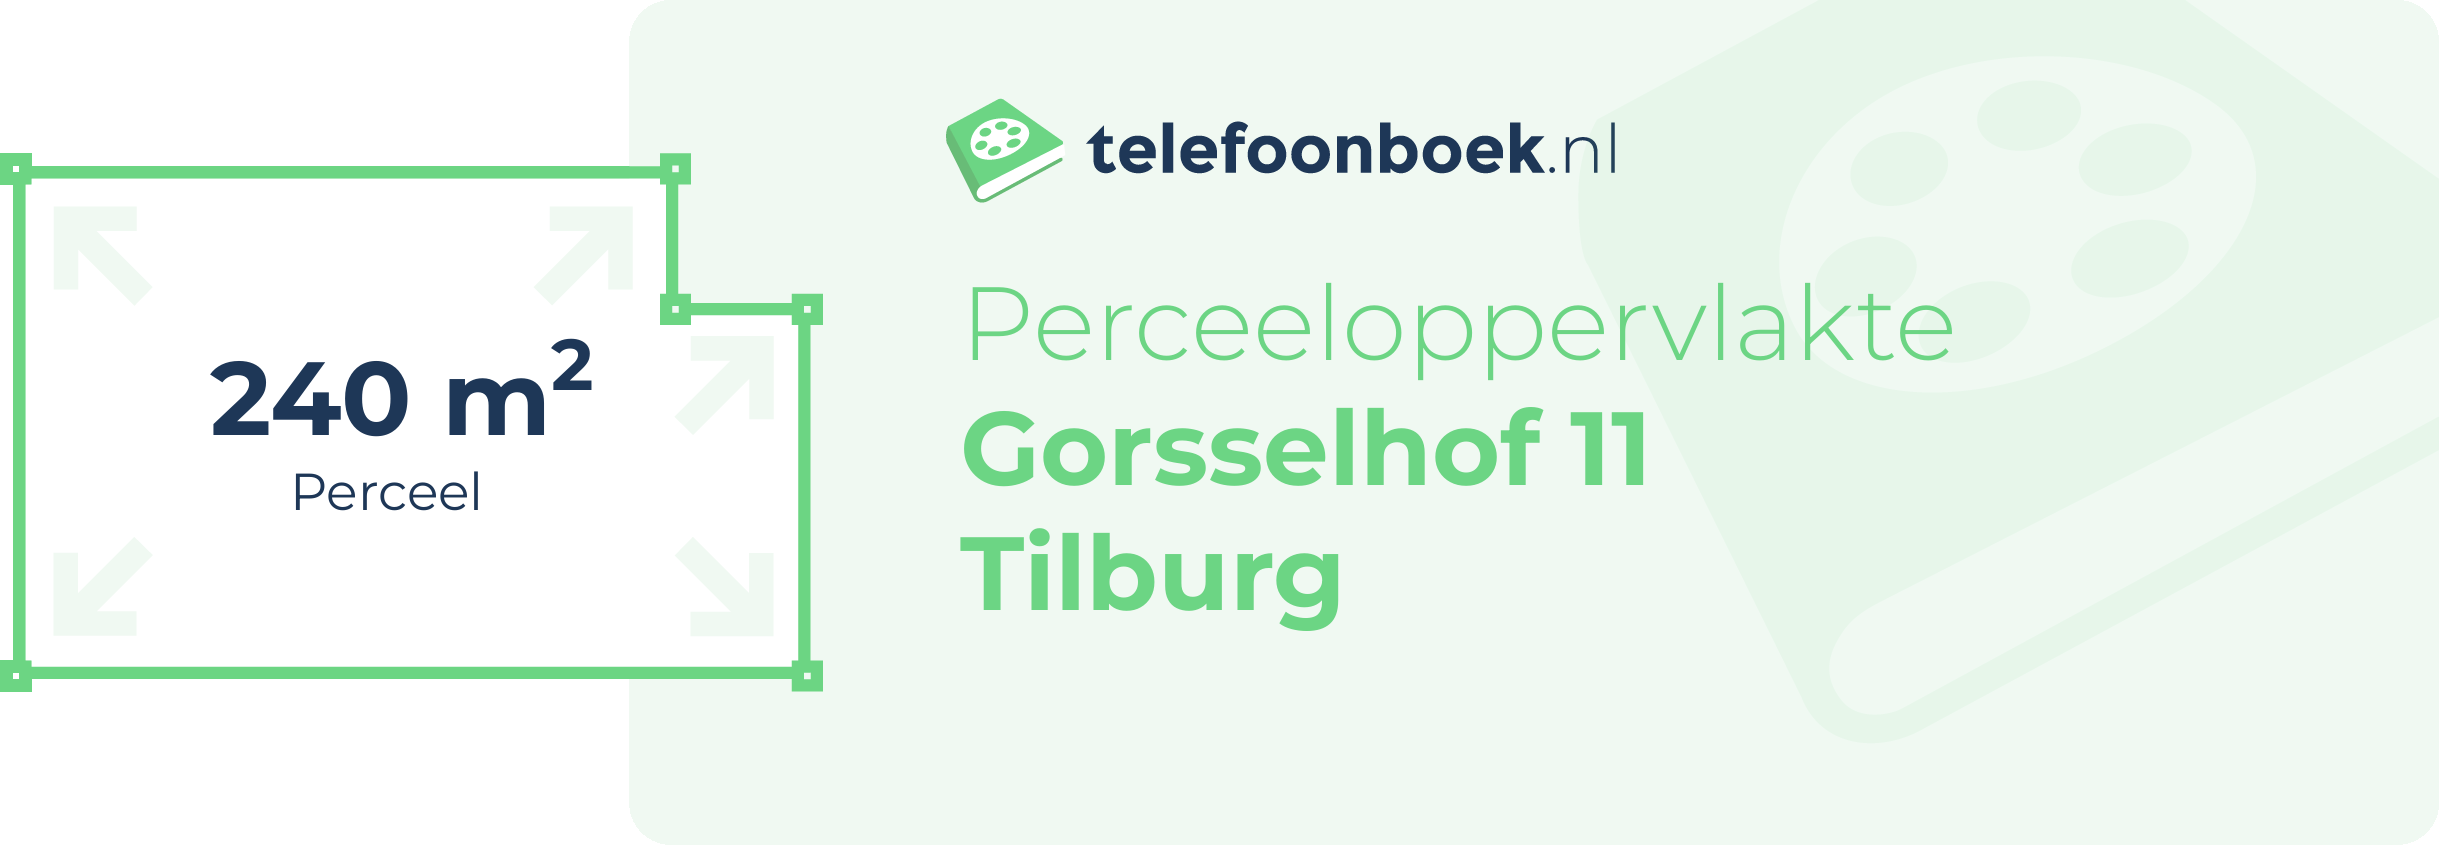 Perceeloppervlakte Gorsselhof 11 Tilburg